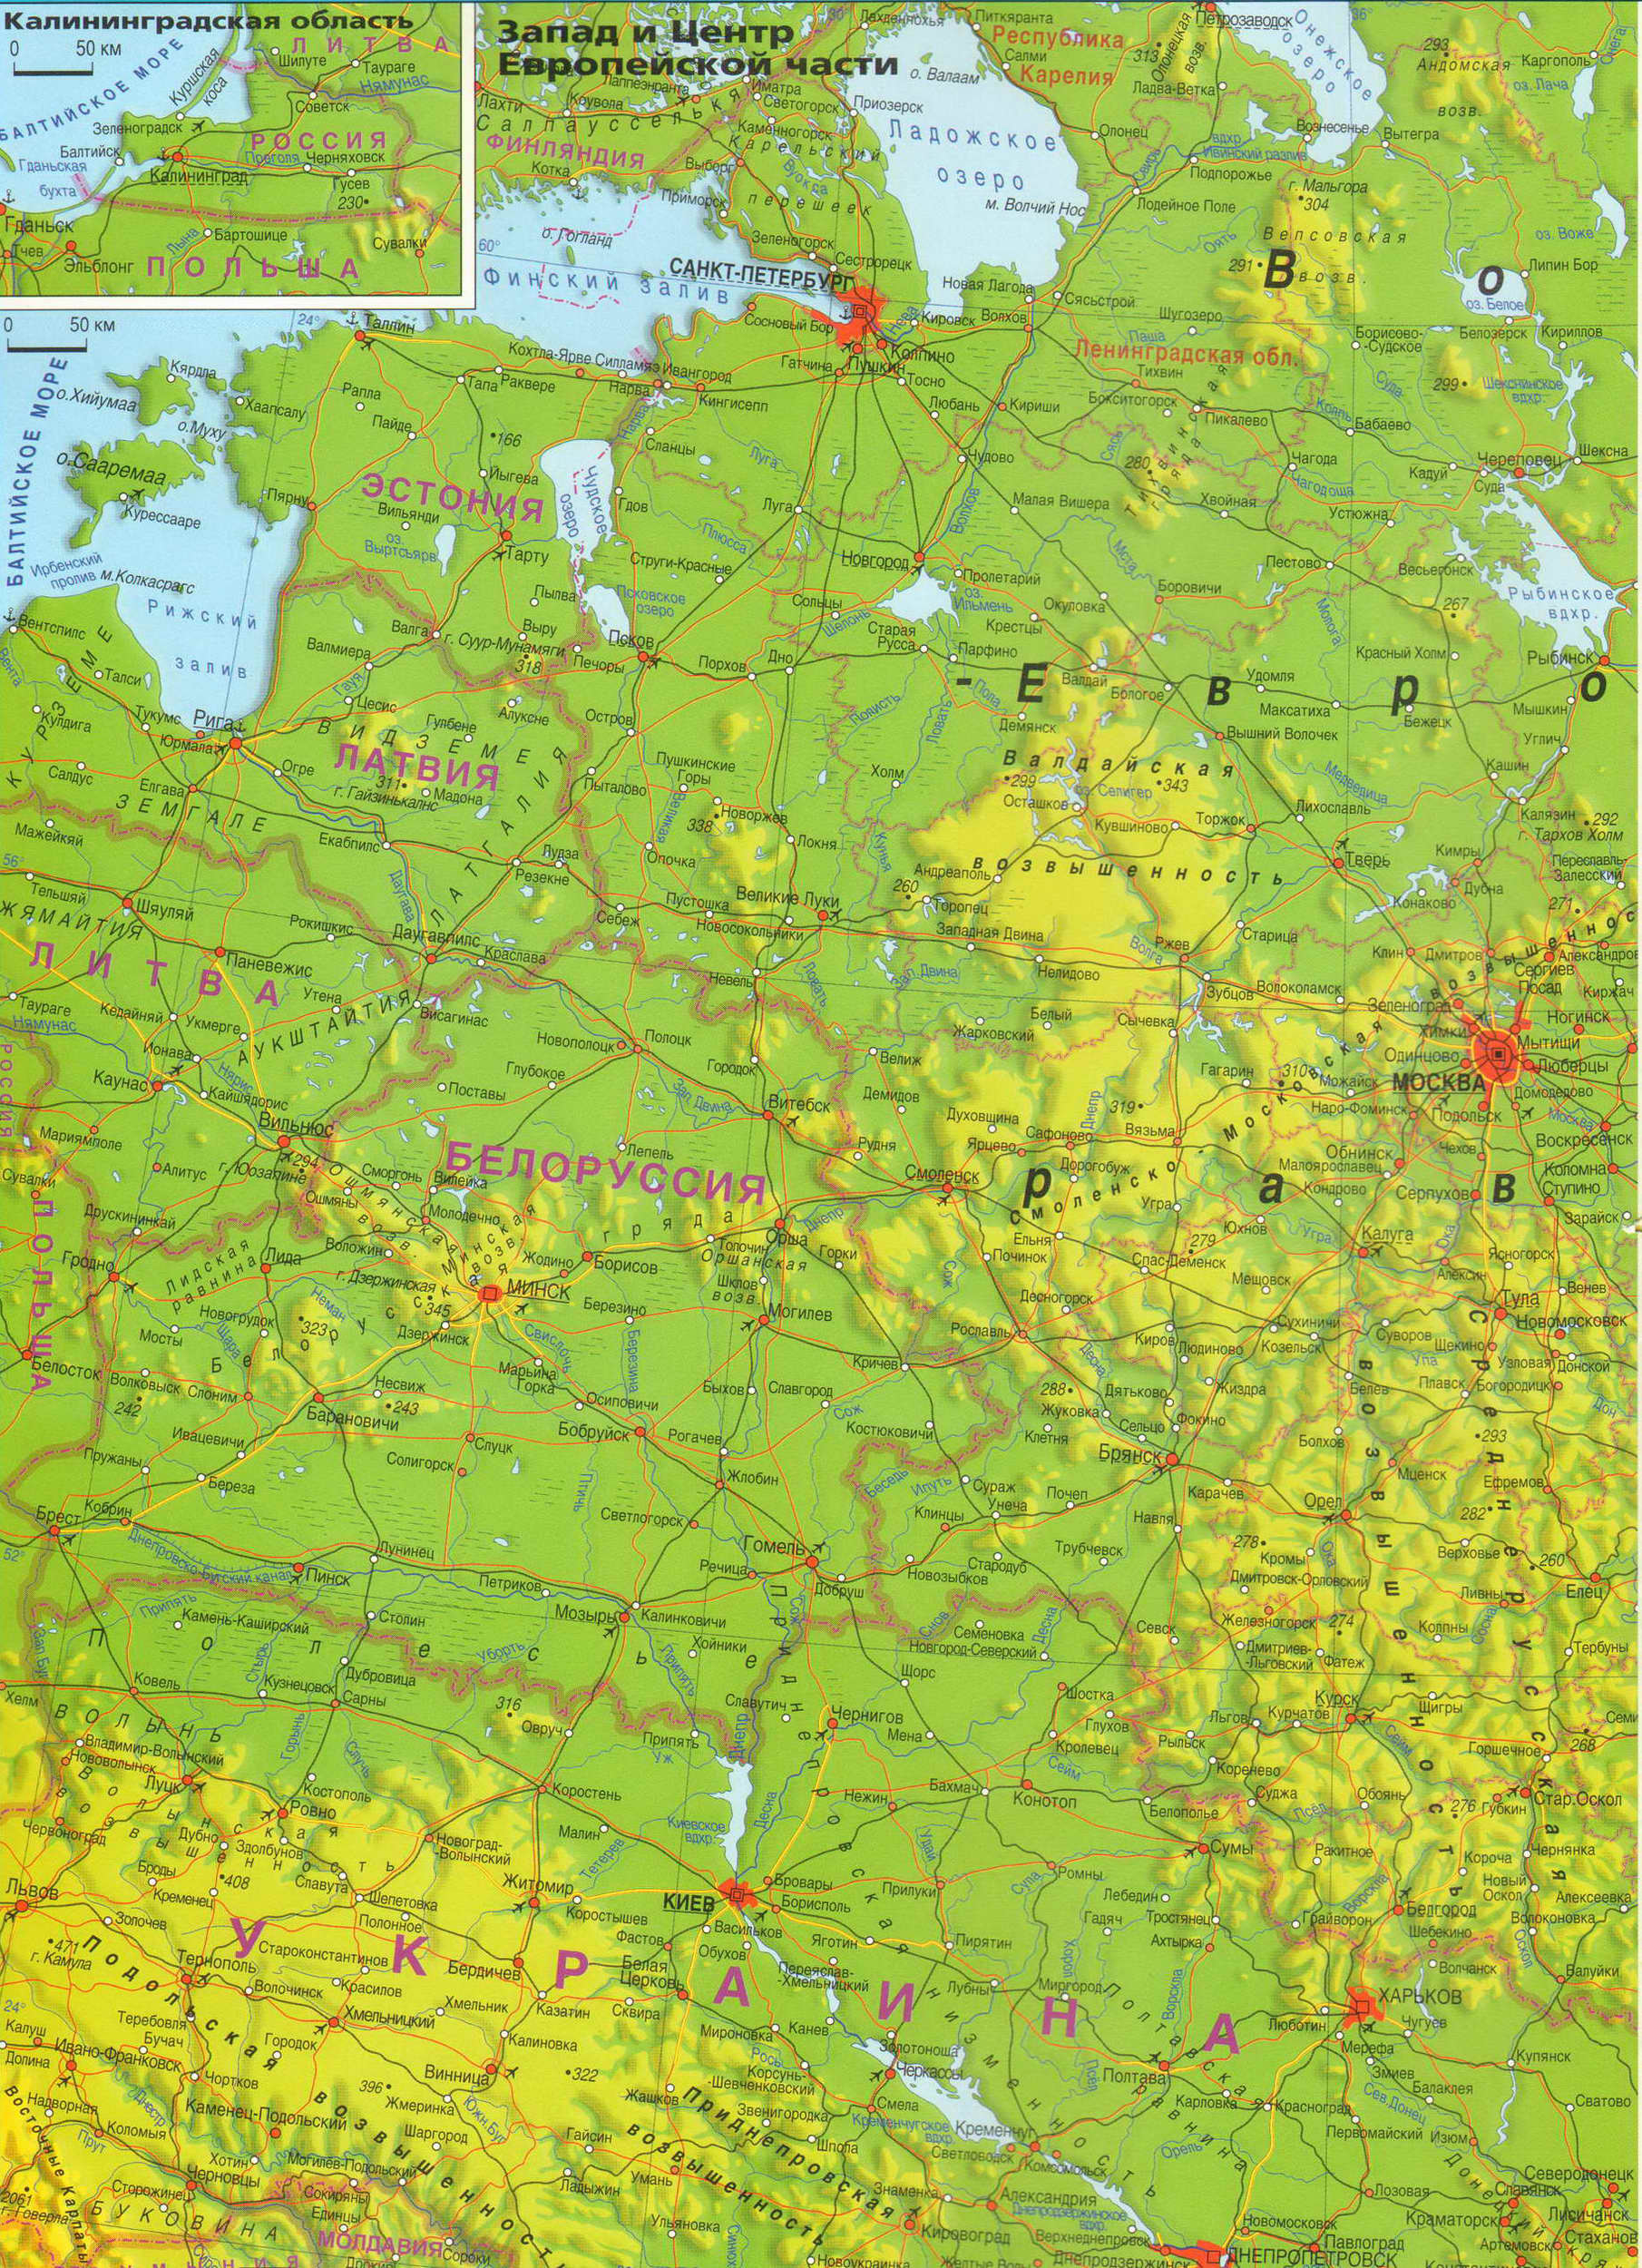 Географическая карта Европейской части Российской Федерации. Подробная географическая карта центра Европейской части Российской Федерации, A0 - 